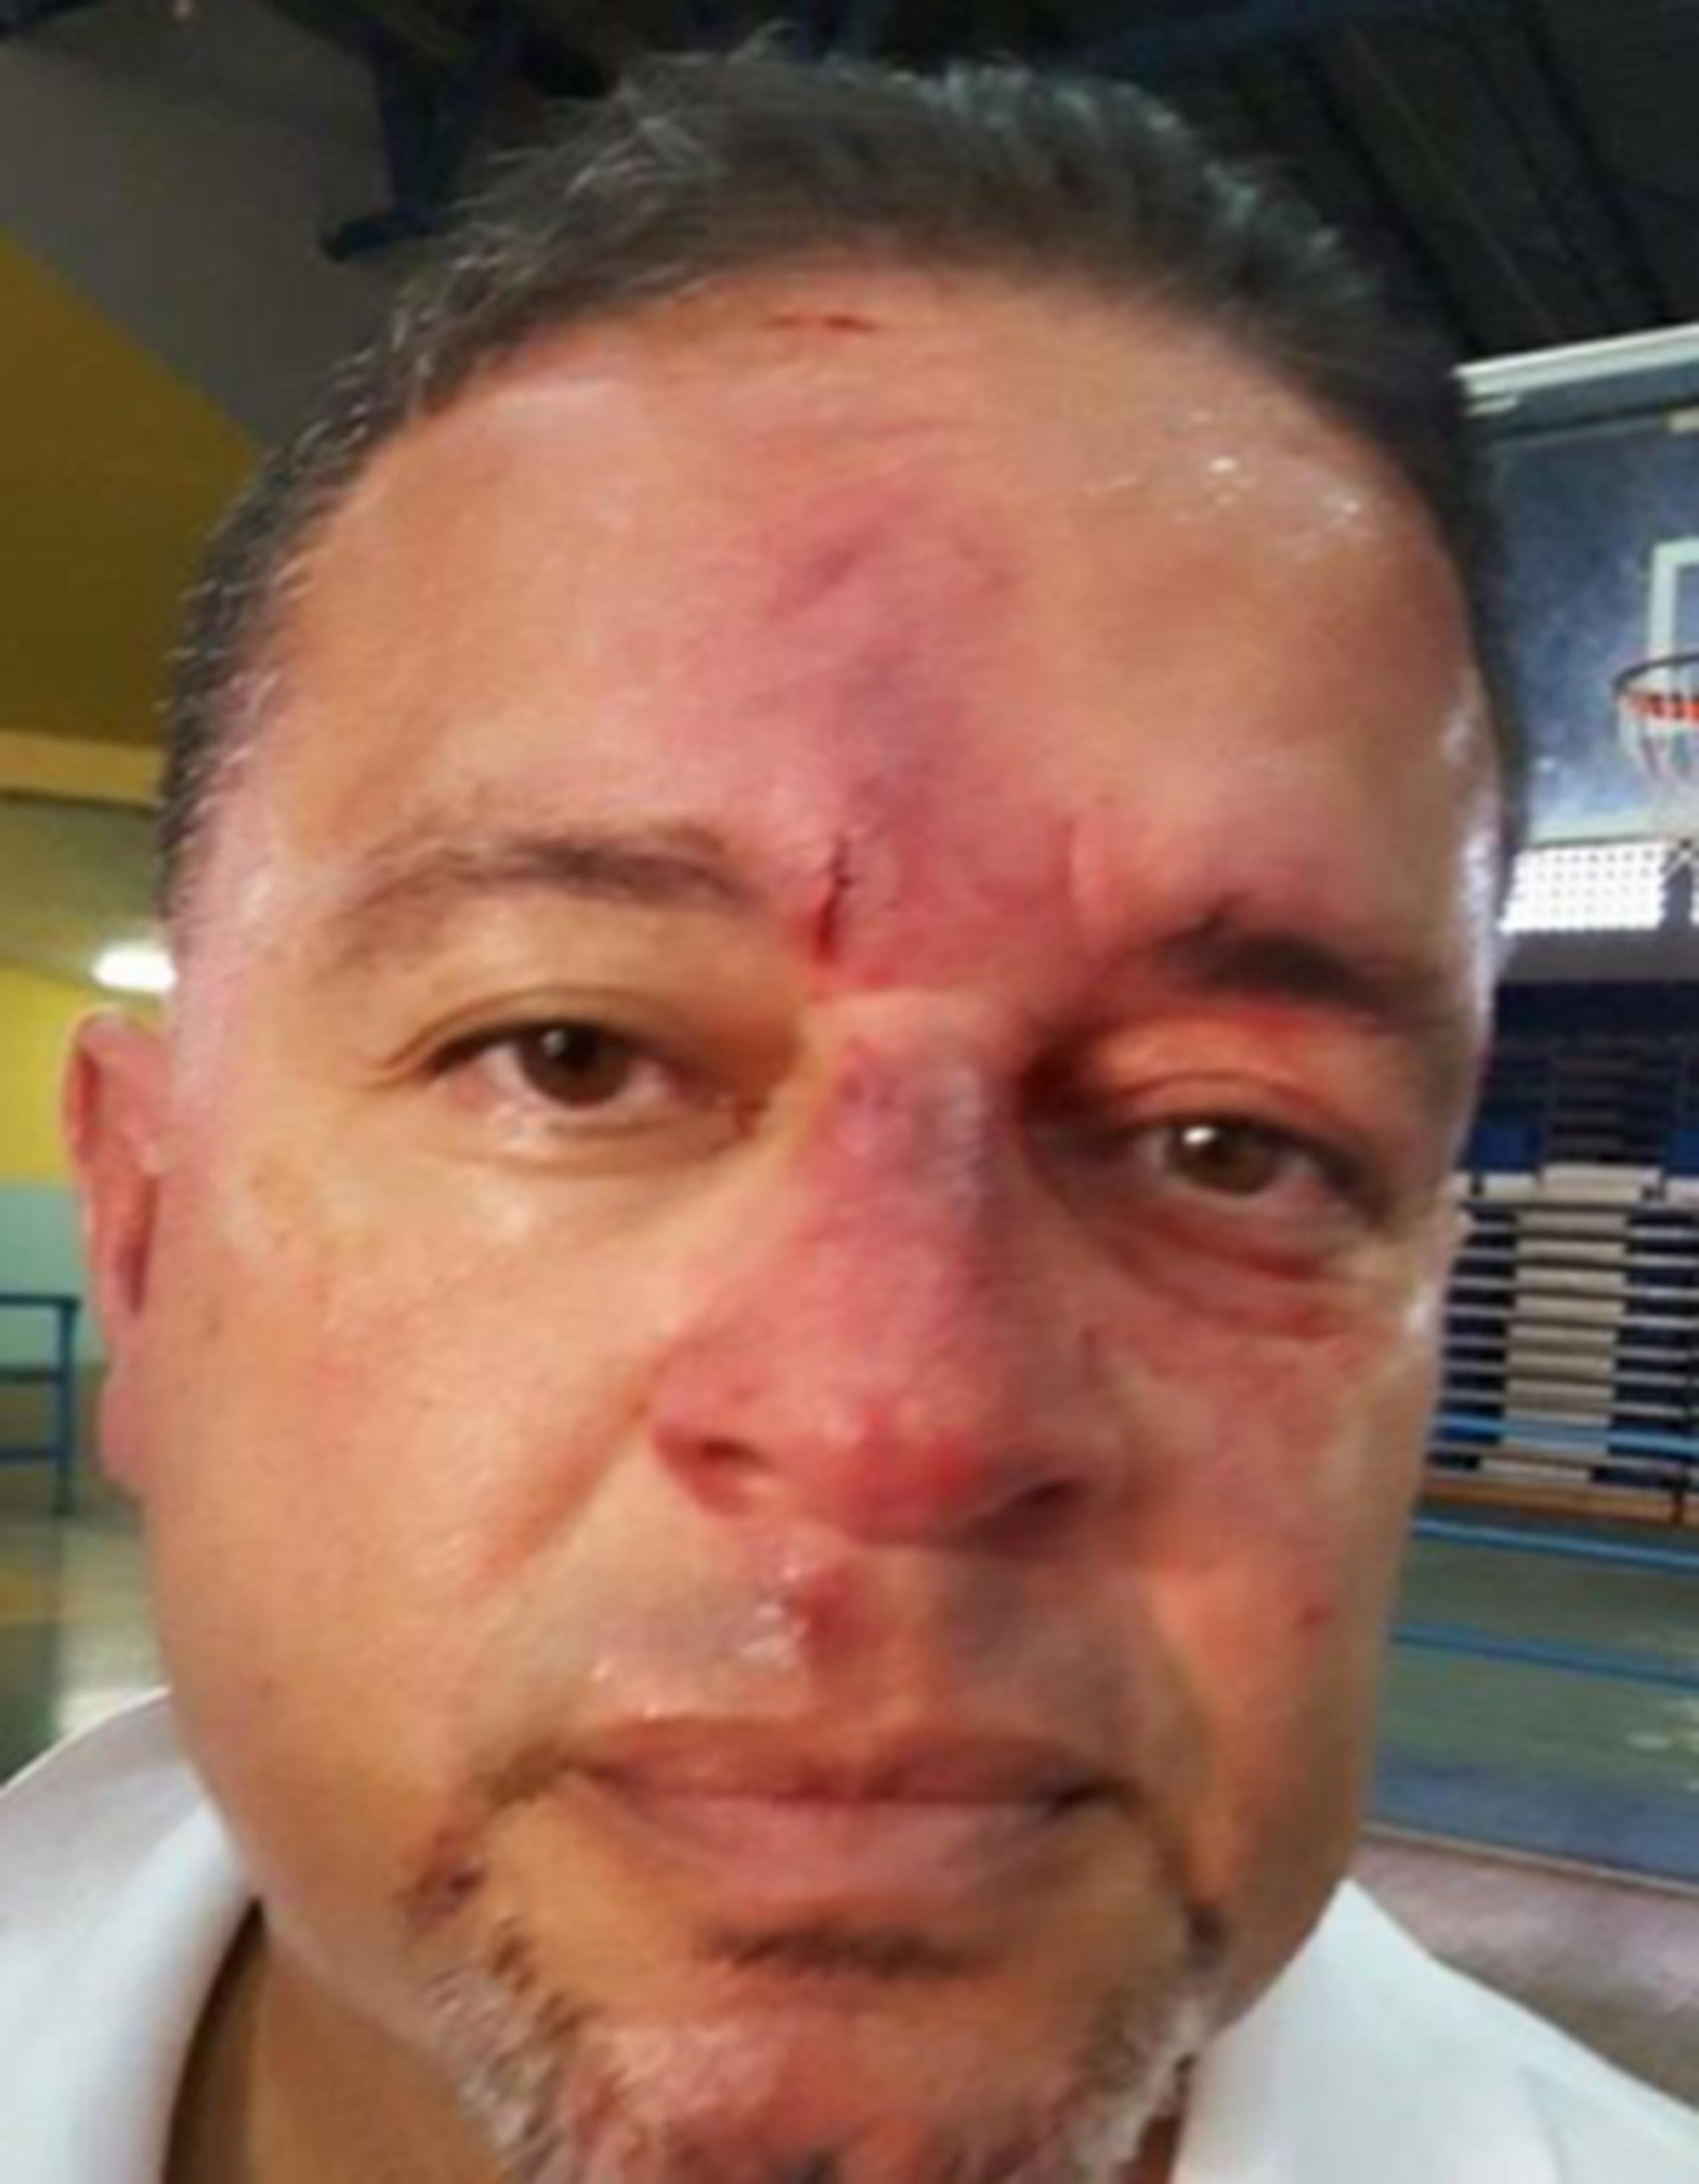 El árbitro fue llevado al hospital Ryder en Humacao por agentes de la policía. (Suministrada)